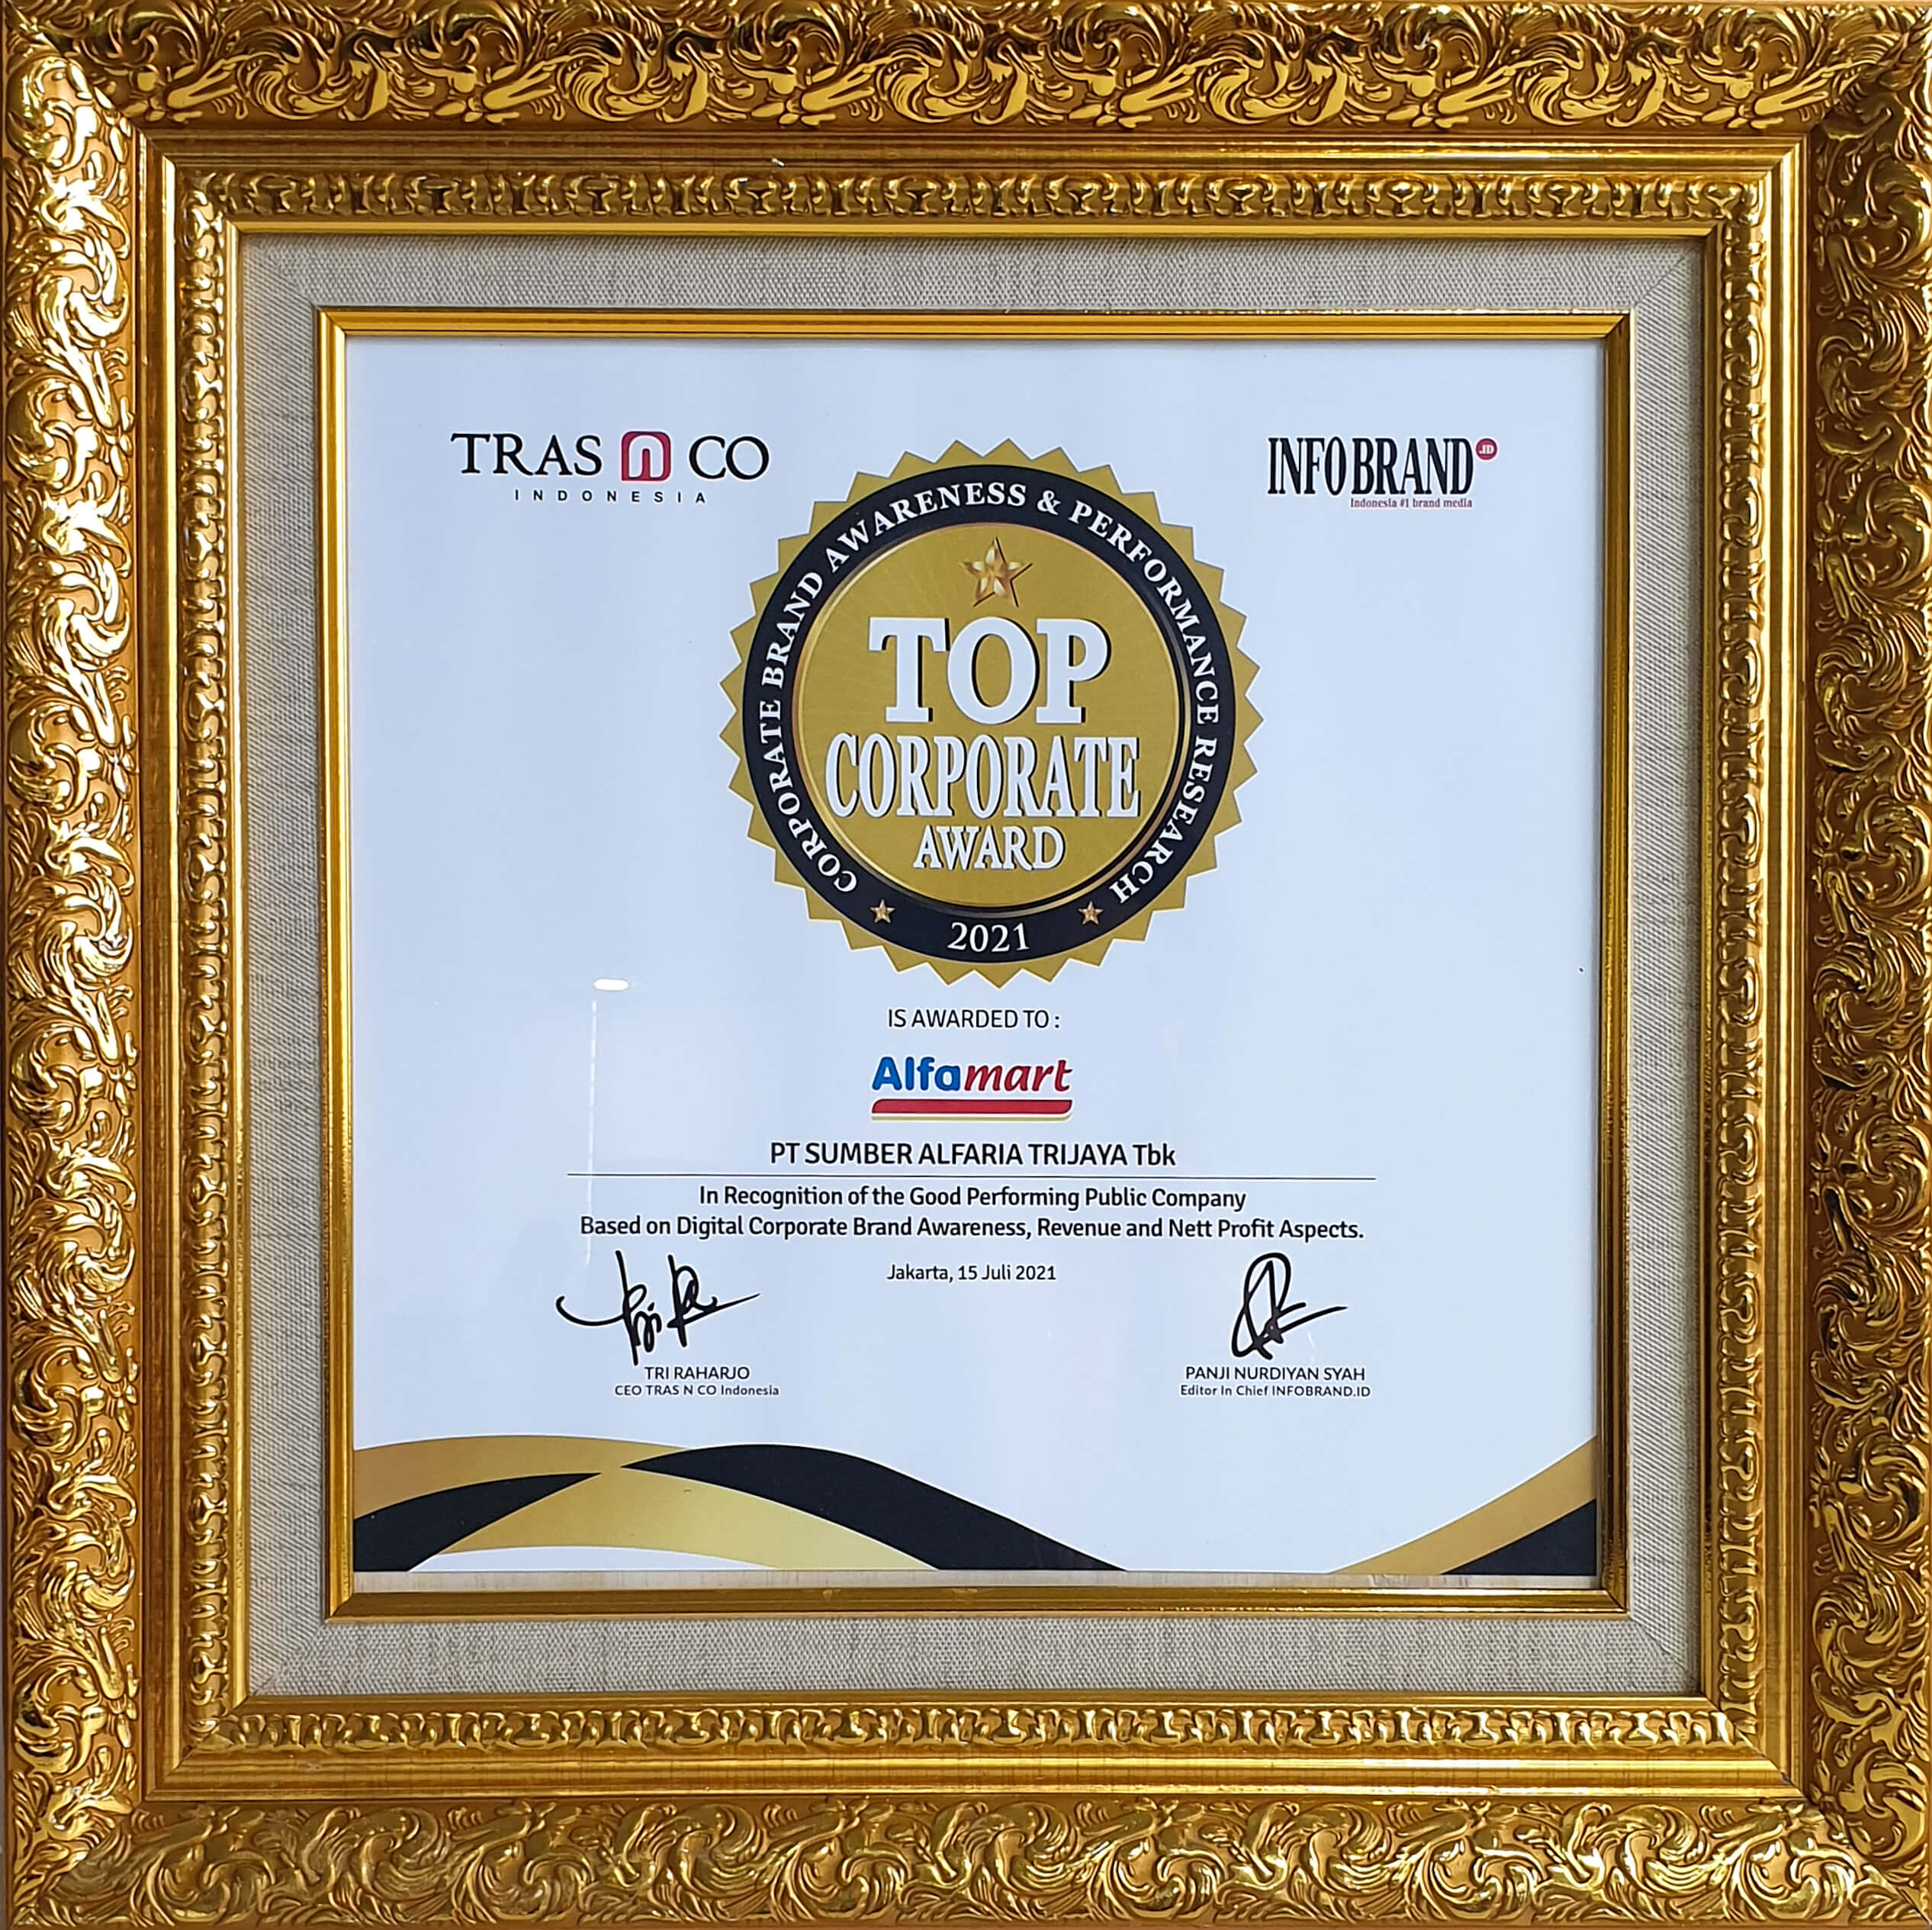 Image reward Top Corporate Award 2021 dari InfoBrand